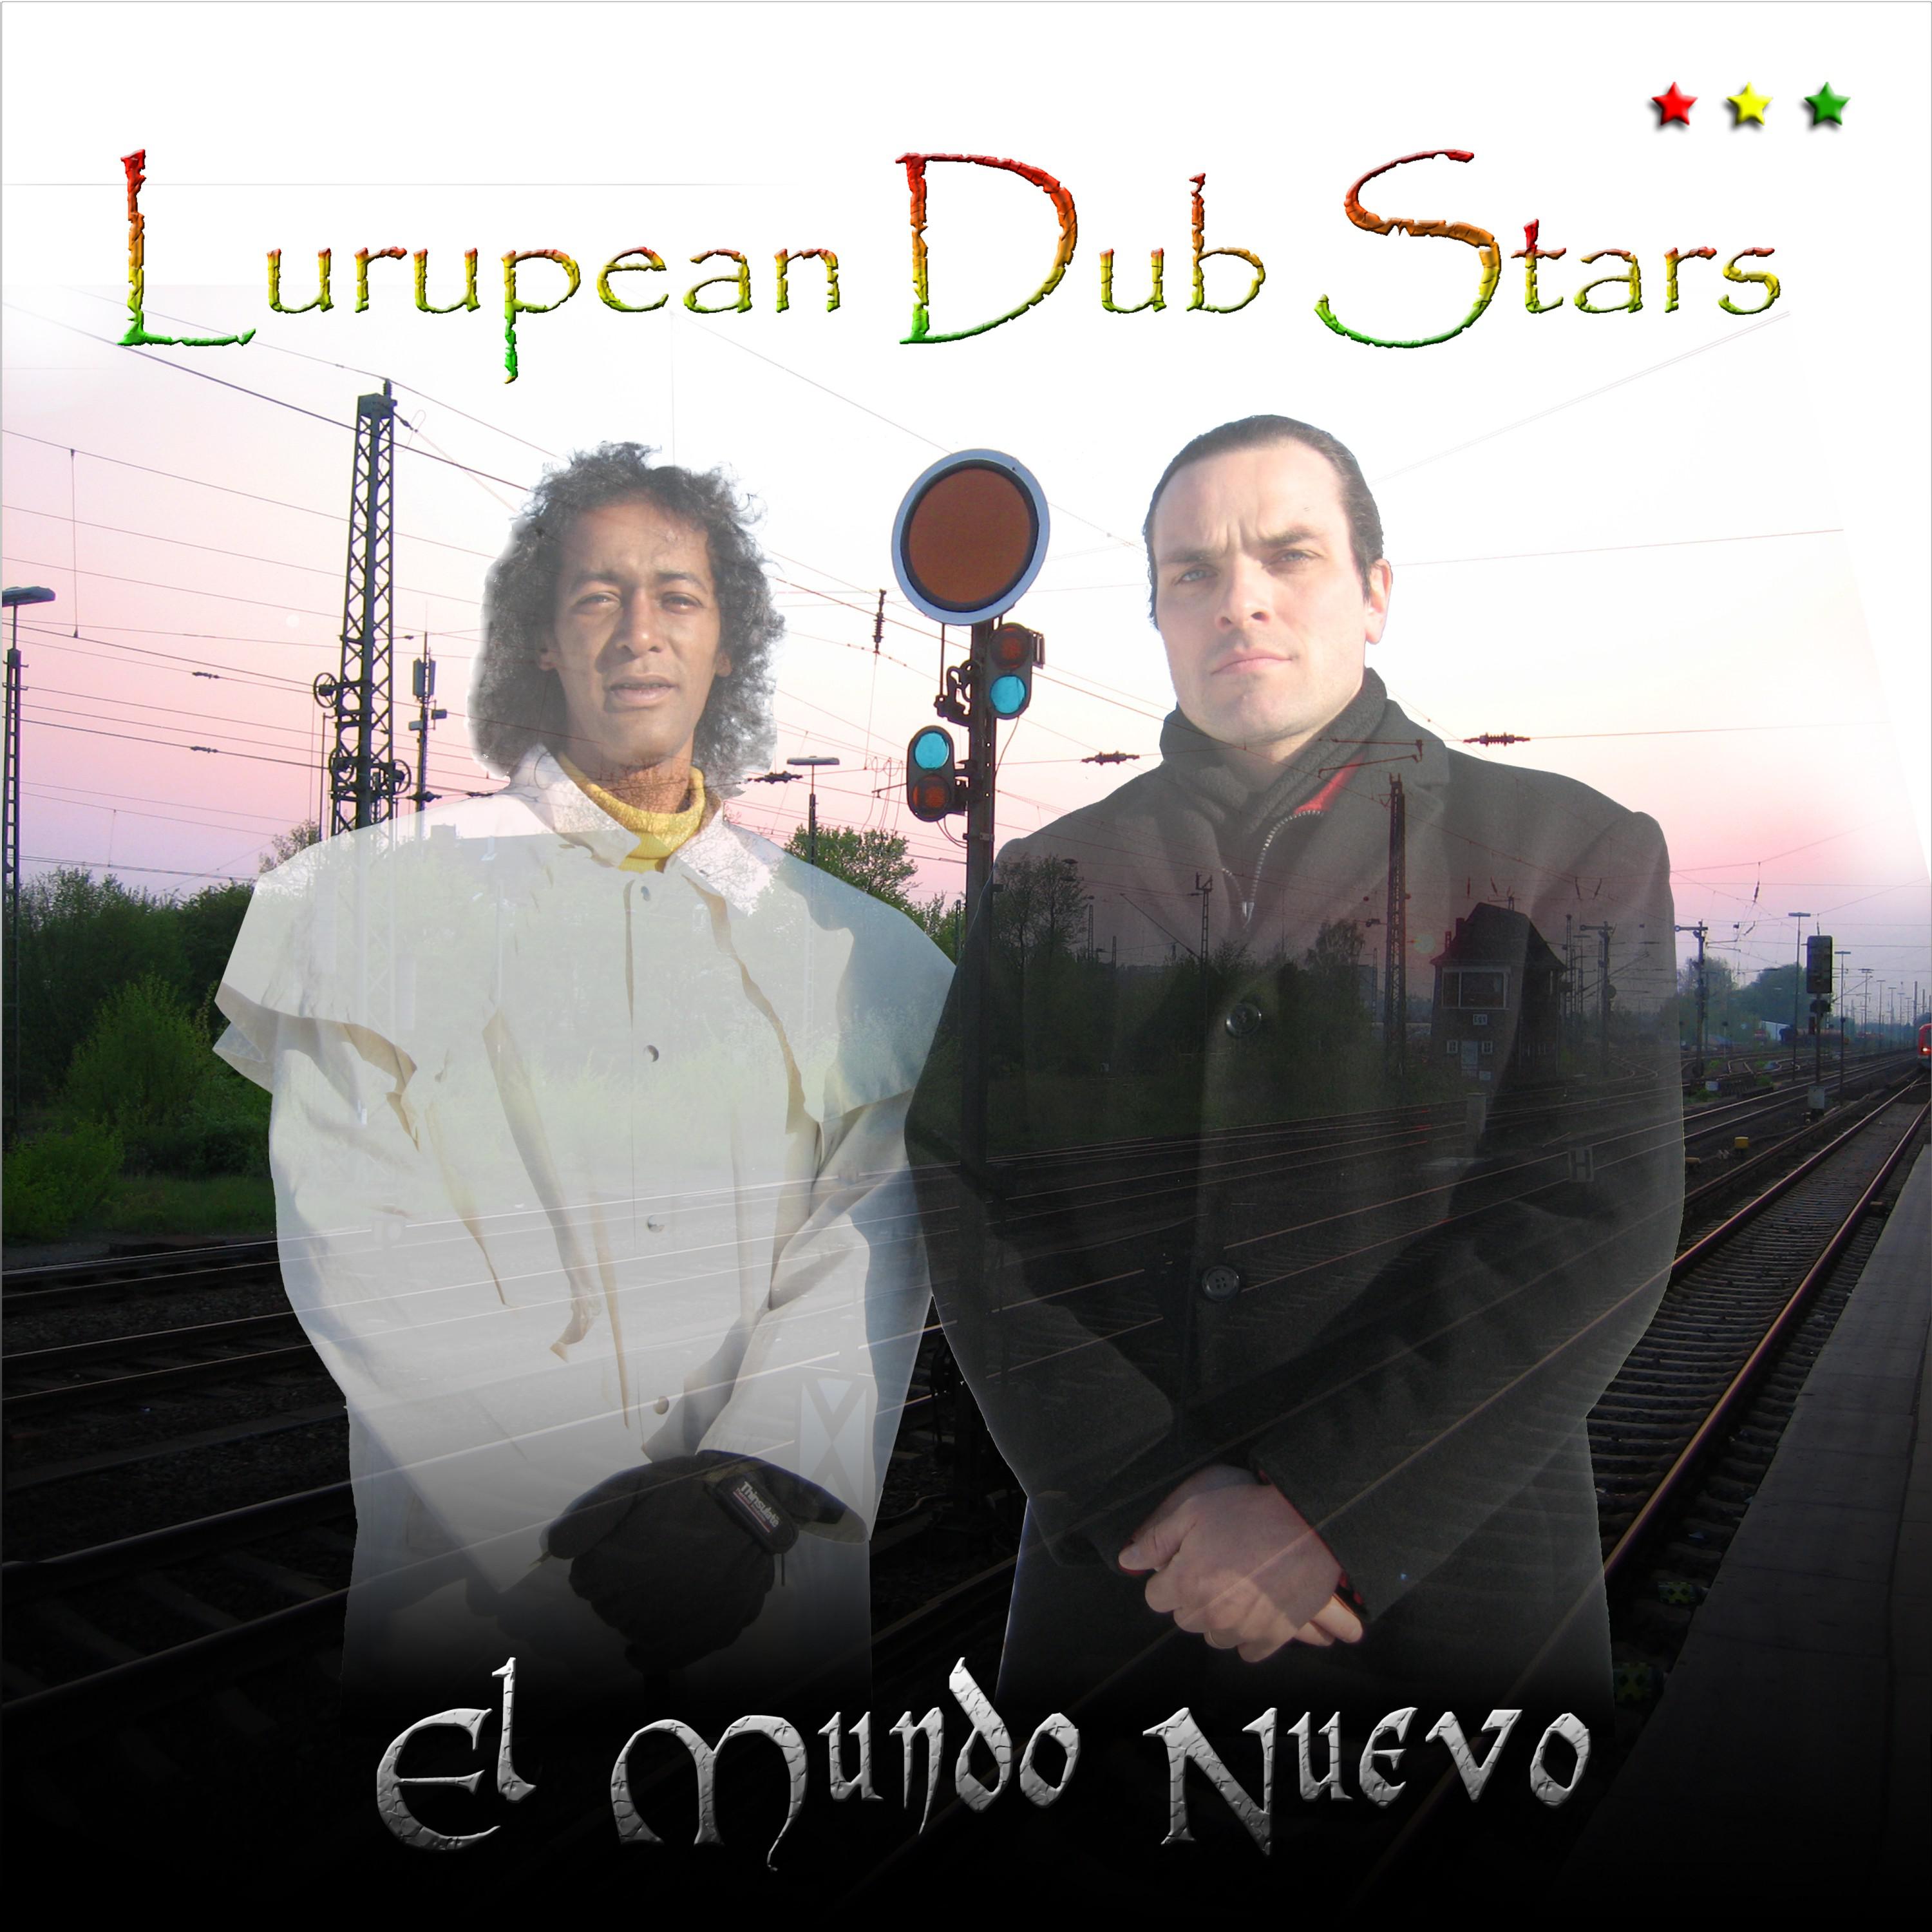 Lurupean Dub Stars - Touch Mahal